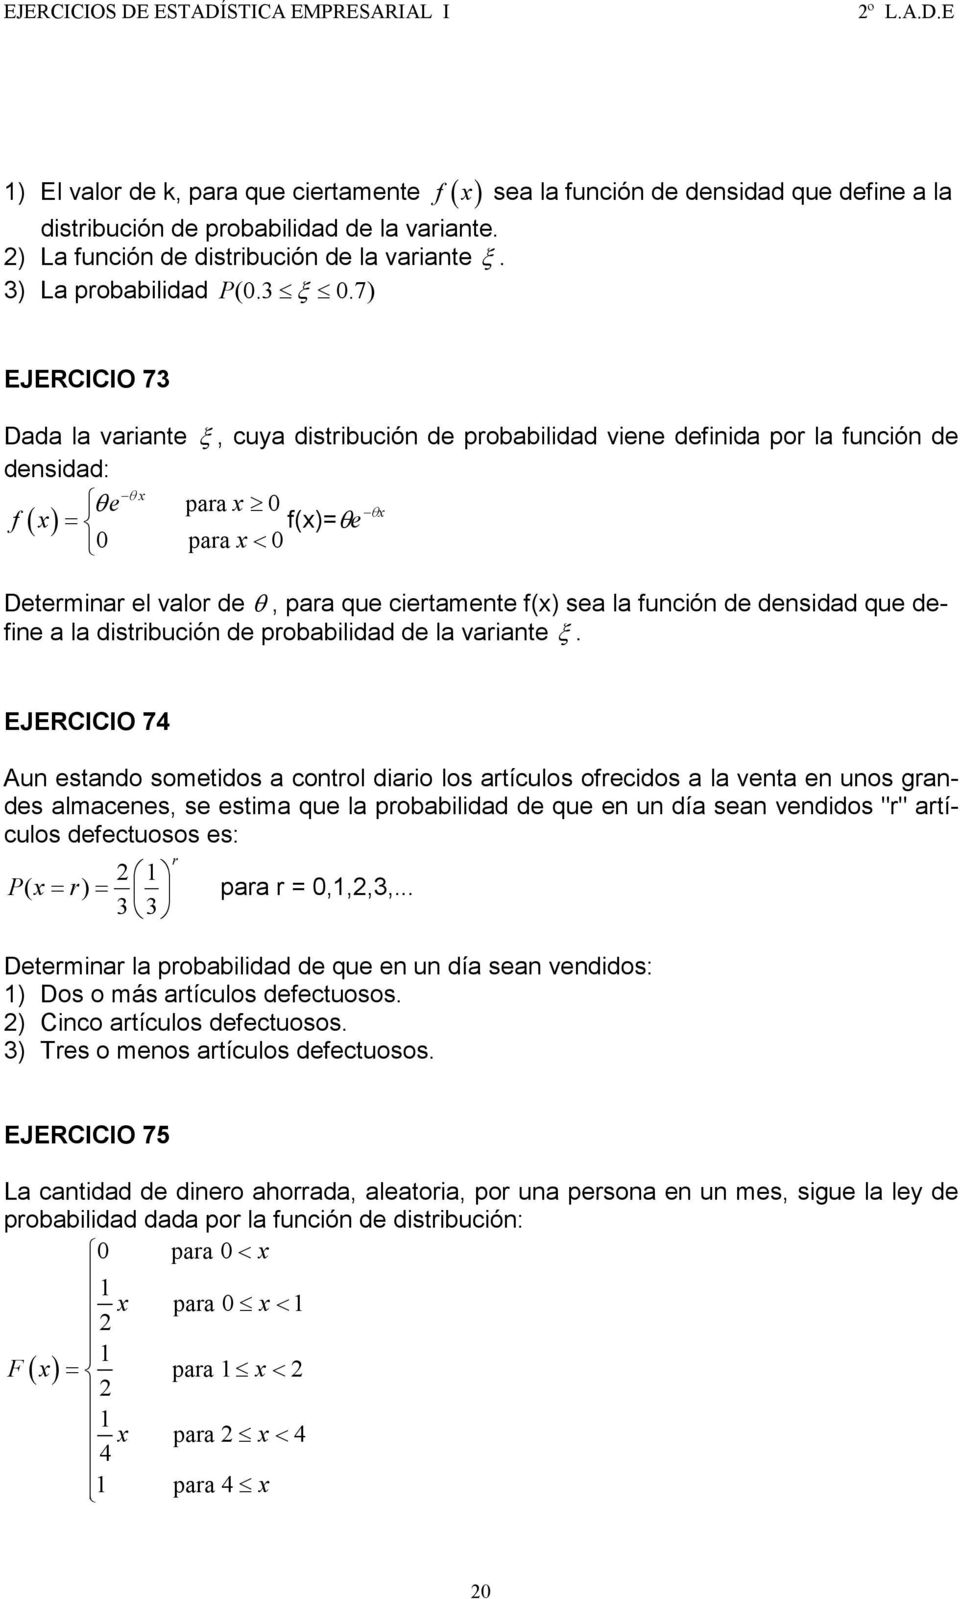 7) EJERCICIO 73 Dada la variante ξ, cuya distribución de probabilidad viene definida por la función de densidad: x θe para 0 ( ) θ x f x = f(x)= θe θx 0 para x< 0 Determinar el valor de θ, para que